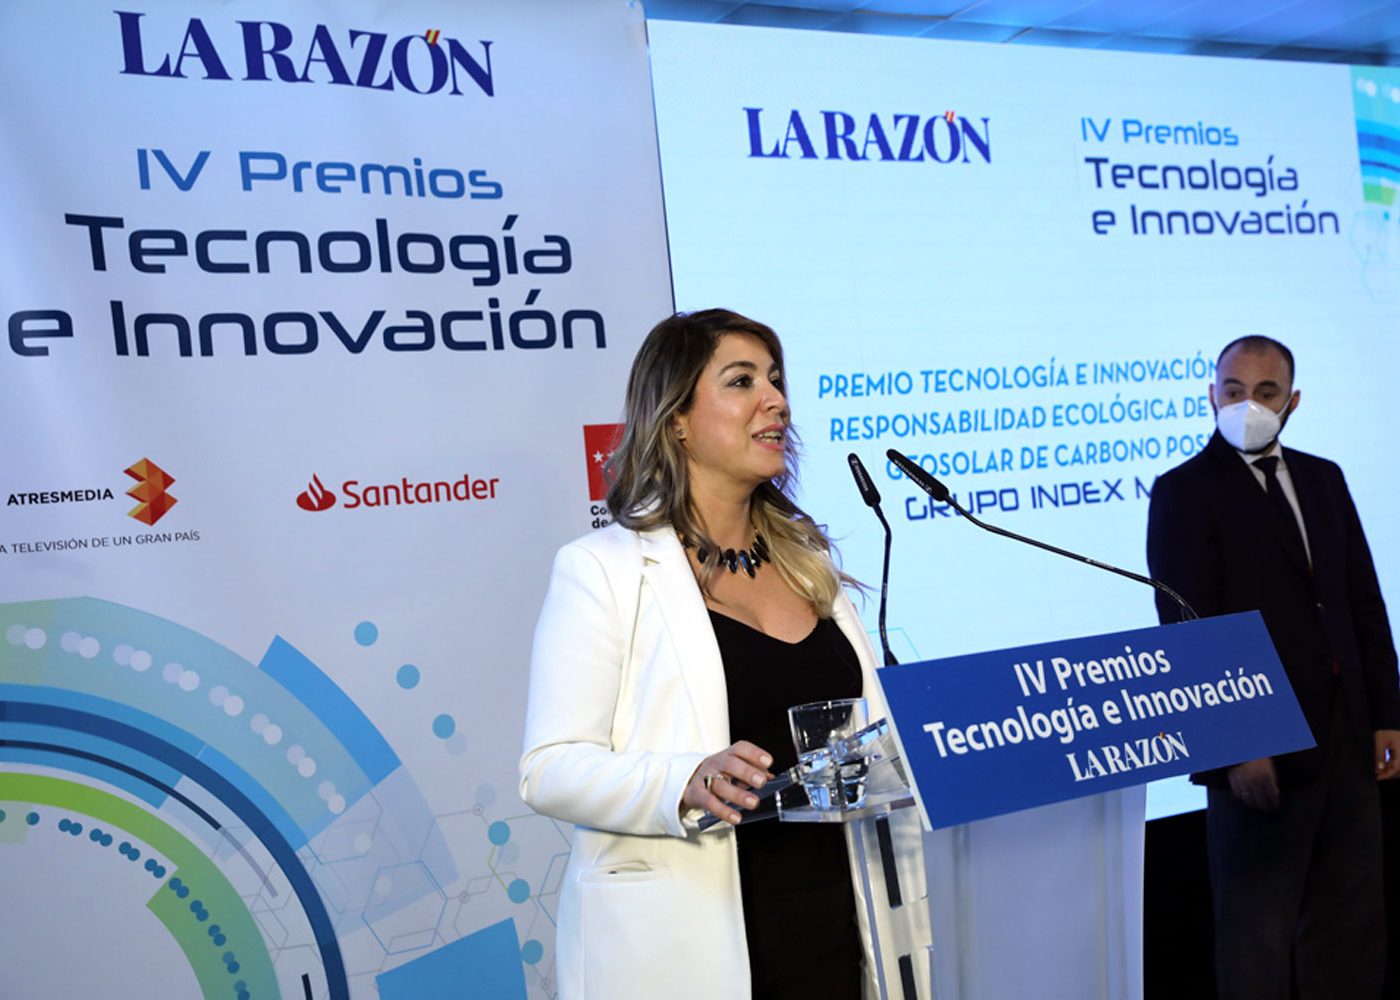 grupo-index-premios-tecnologia-innovacion-la-razon-04.jpg